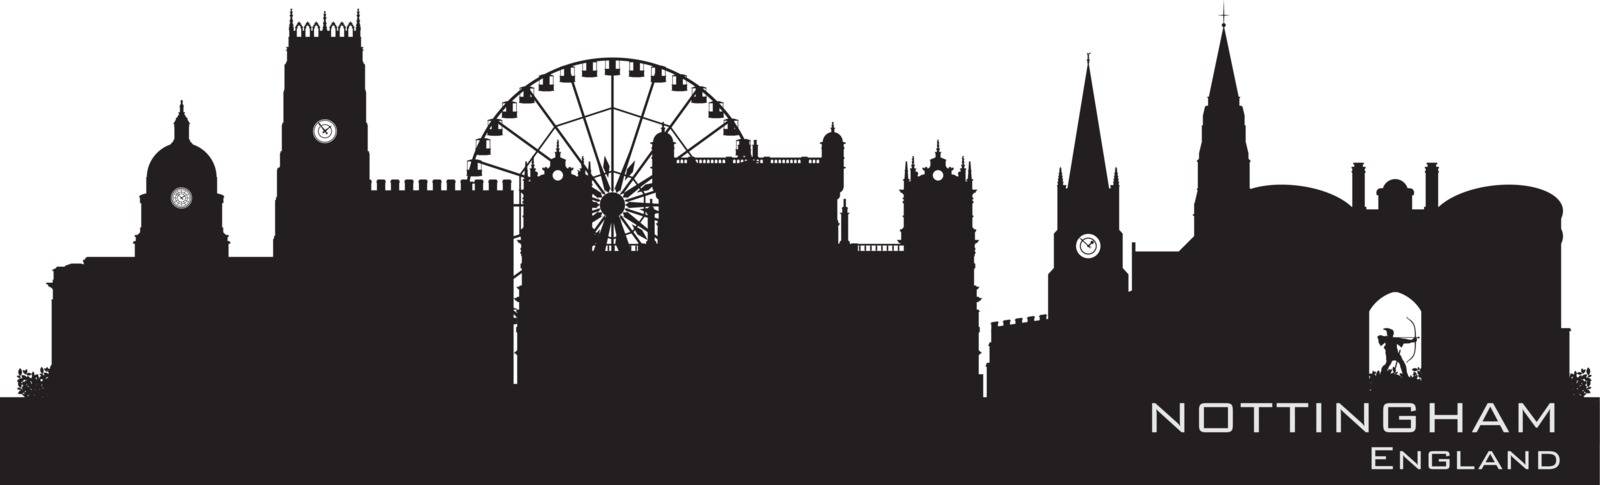 Nottingham, England skyline. Detailed silhouette. Vector illustration